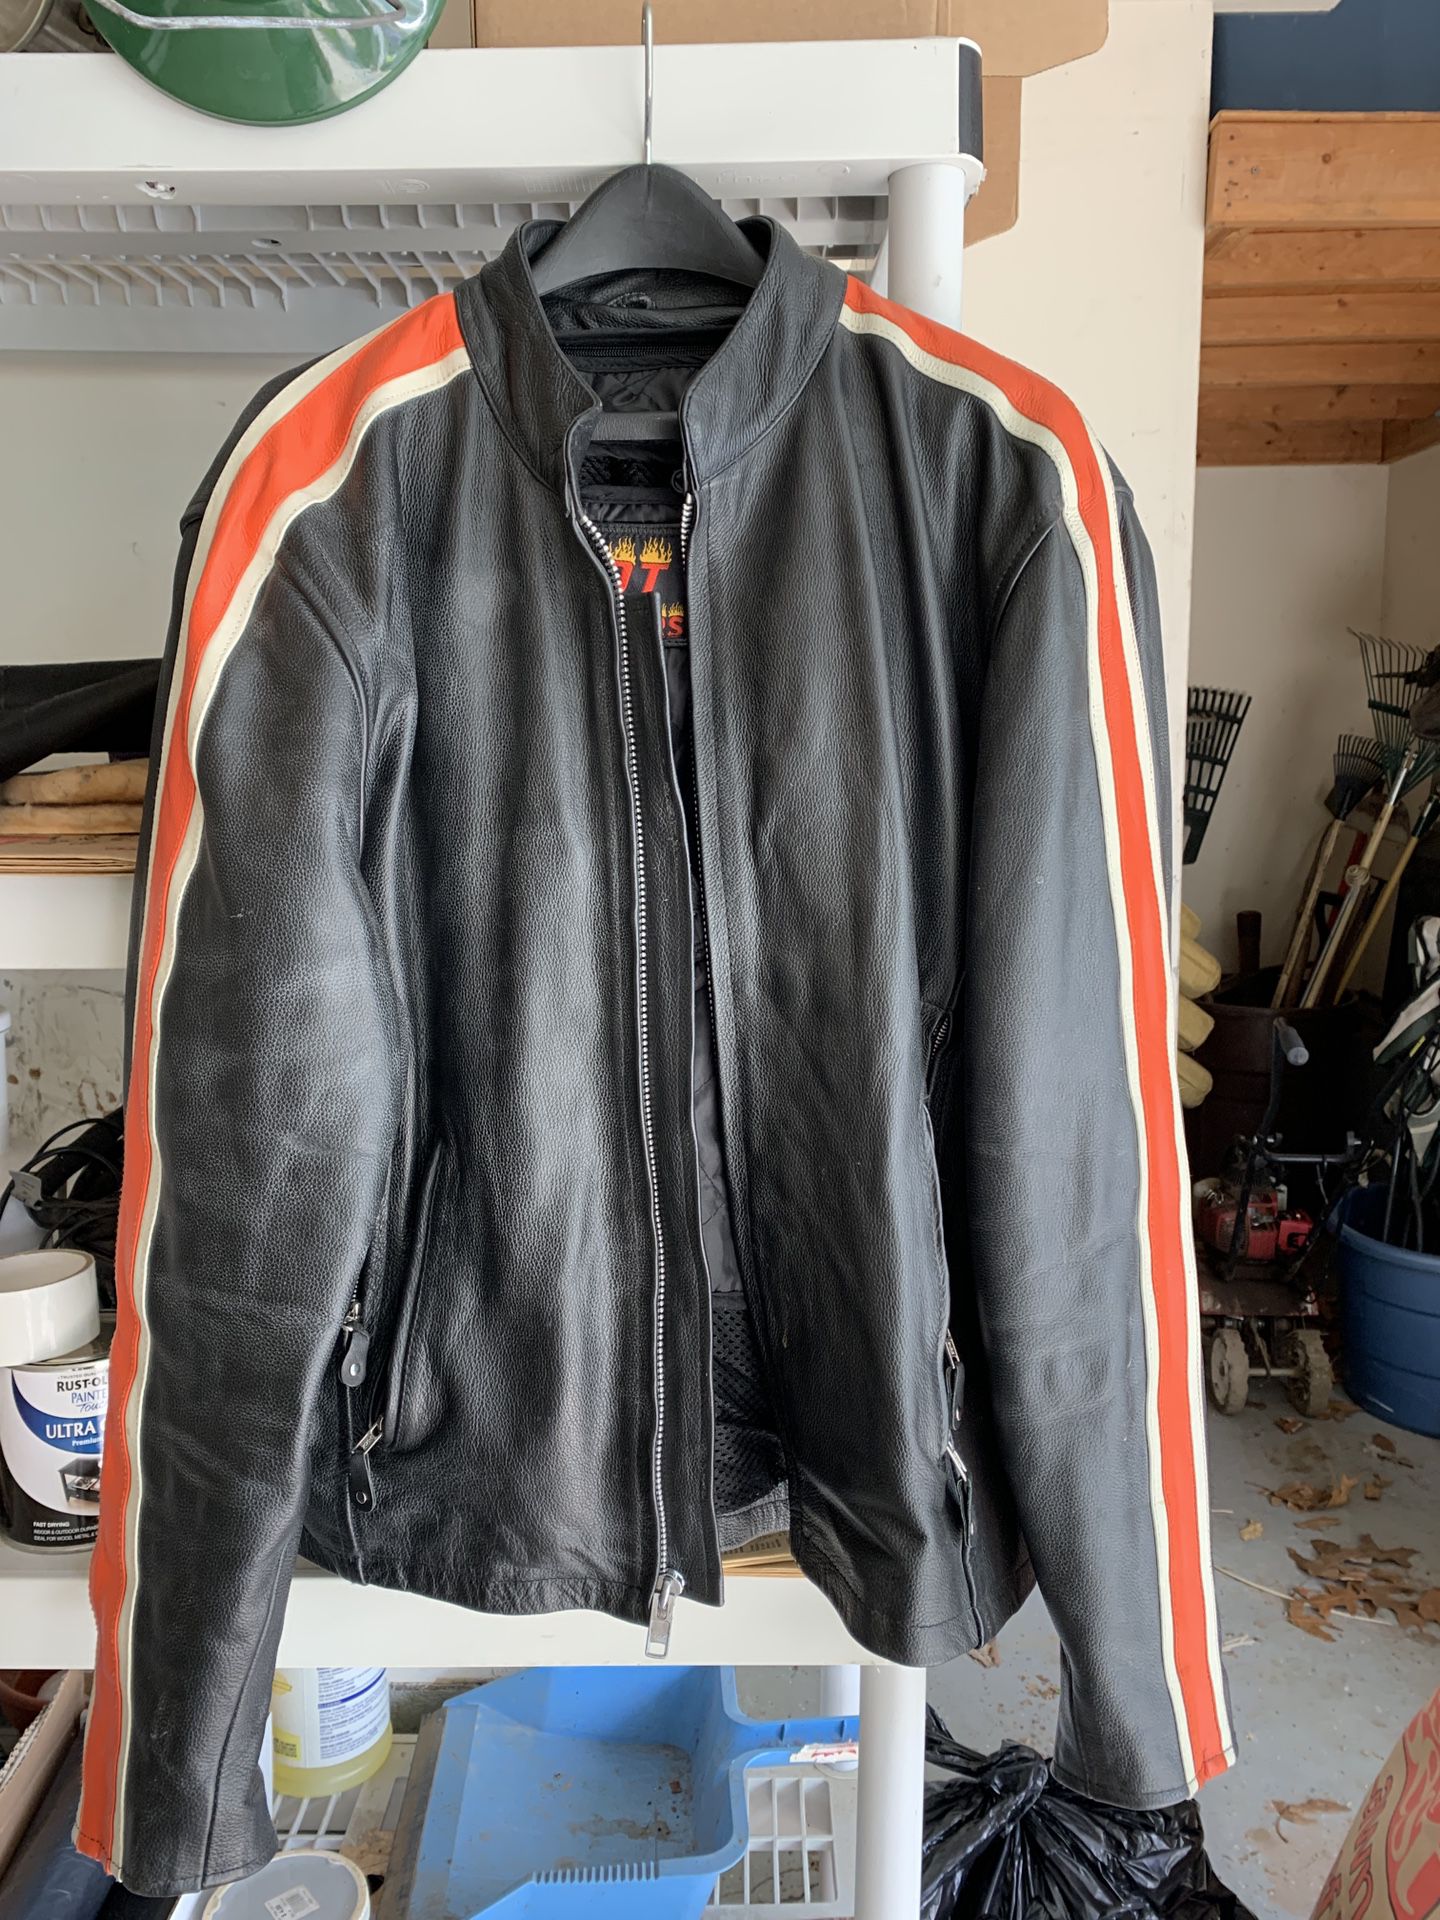 Hot leathers, motorcycle jacket